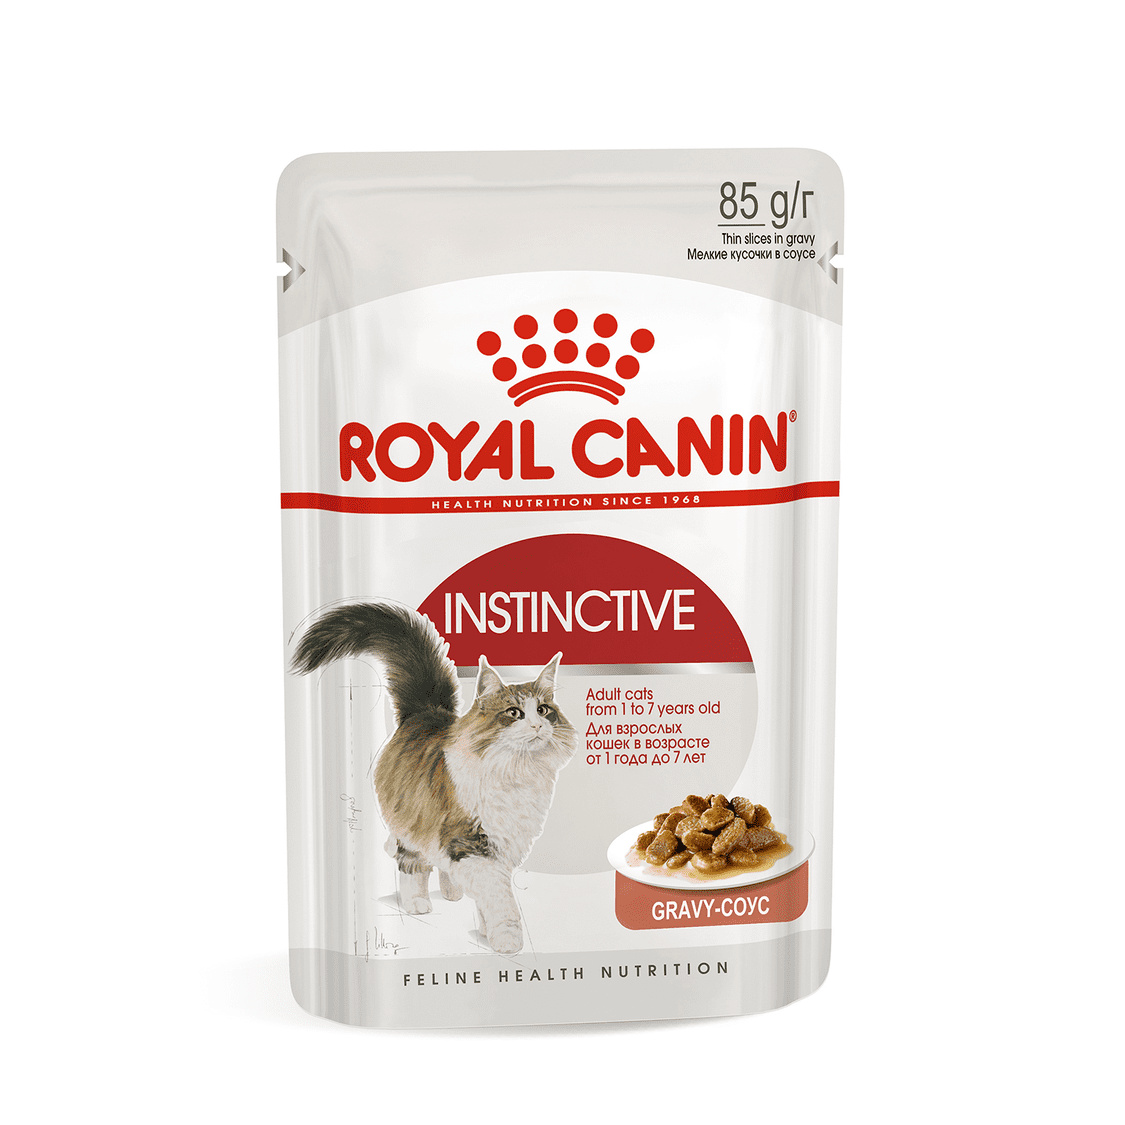 Royal Canin паучи Royal Canin паучи кусочки в соусе для кошек 1-7 лет (85 г) royal canin паучи royal canin паучи кусочки в соусе для кастрированных кошек 1 7лет 1 шт